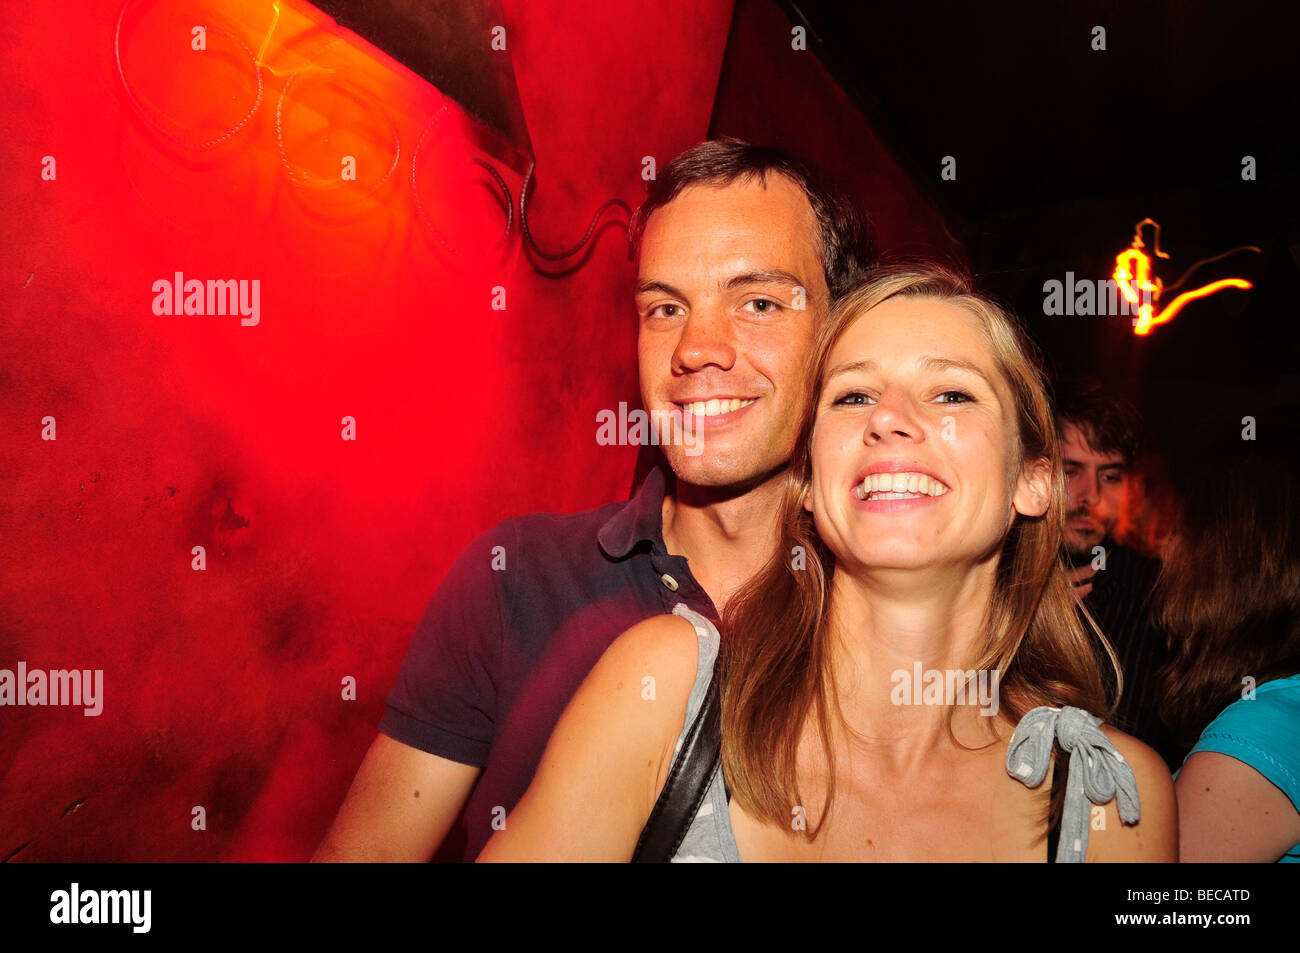 Jeune couple dans un club de nuit, sortir, Madrid, Espagne, Péninsule ibérique, Europe Banque D'Images